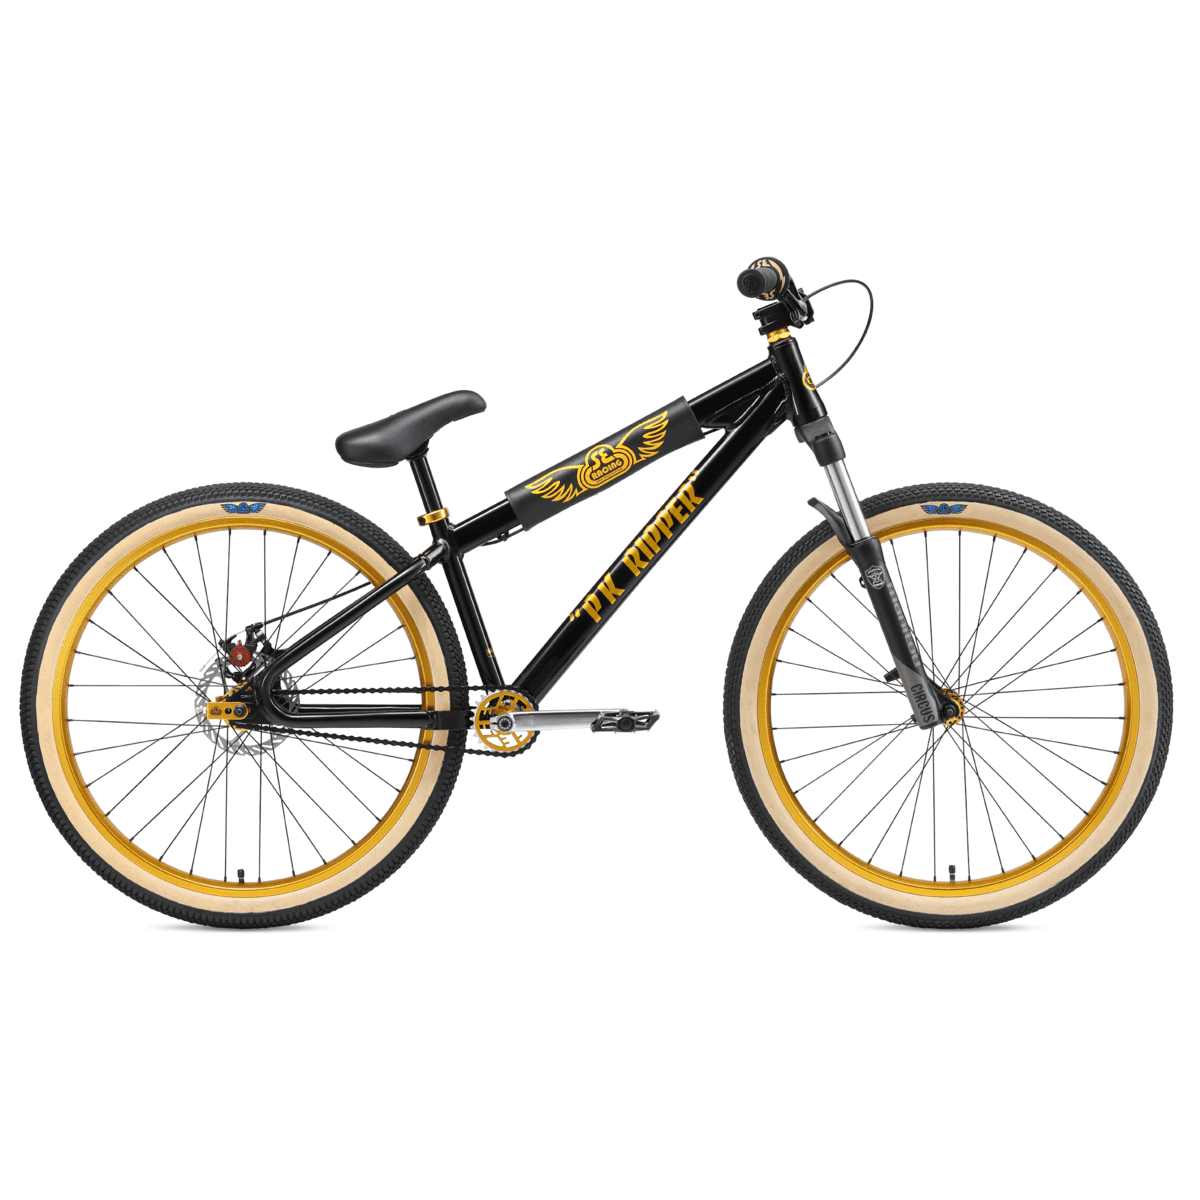 gold and black bike